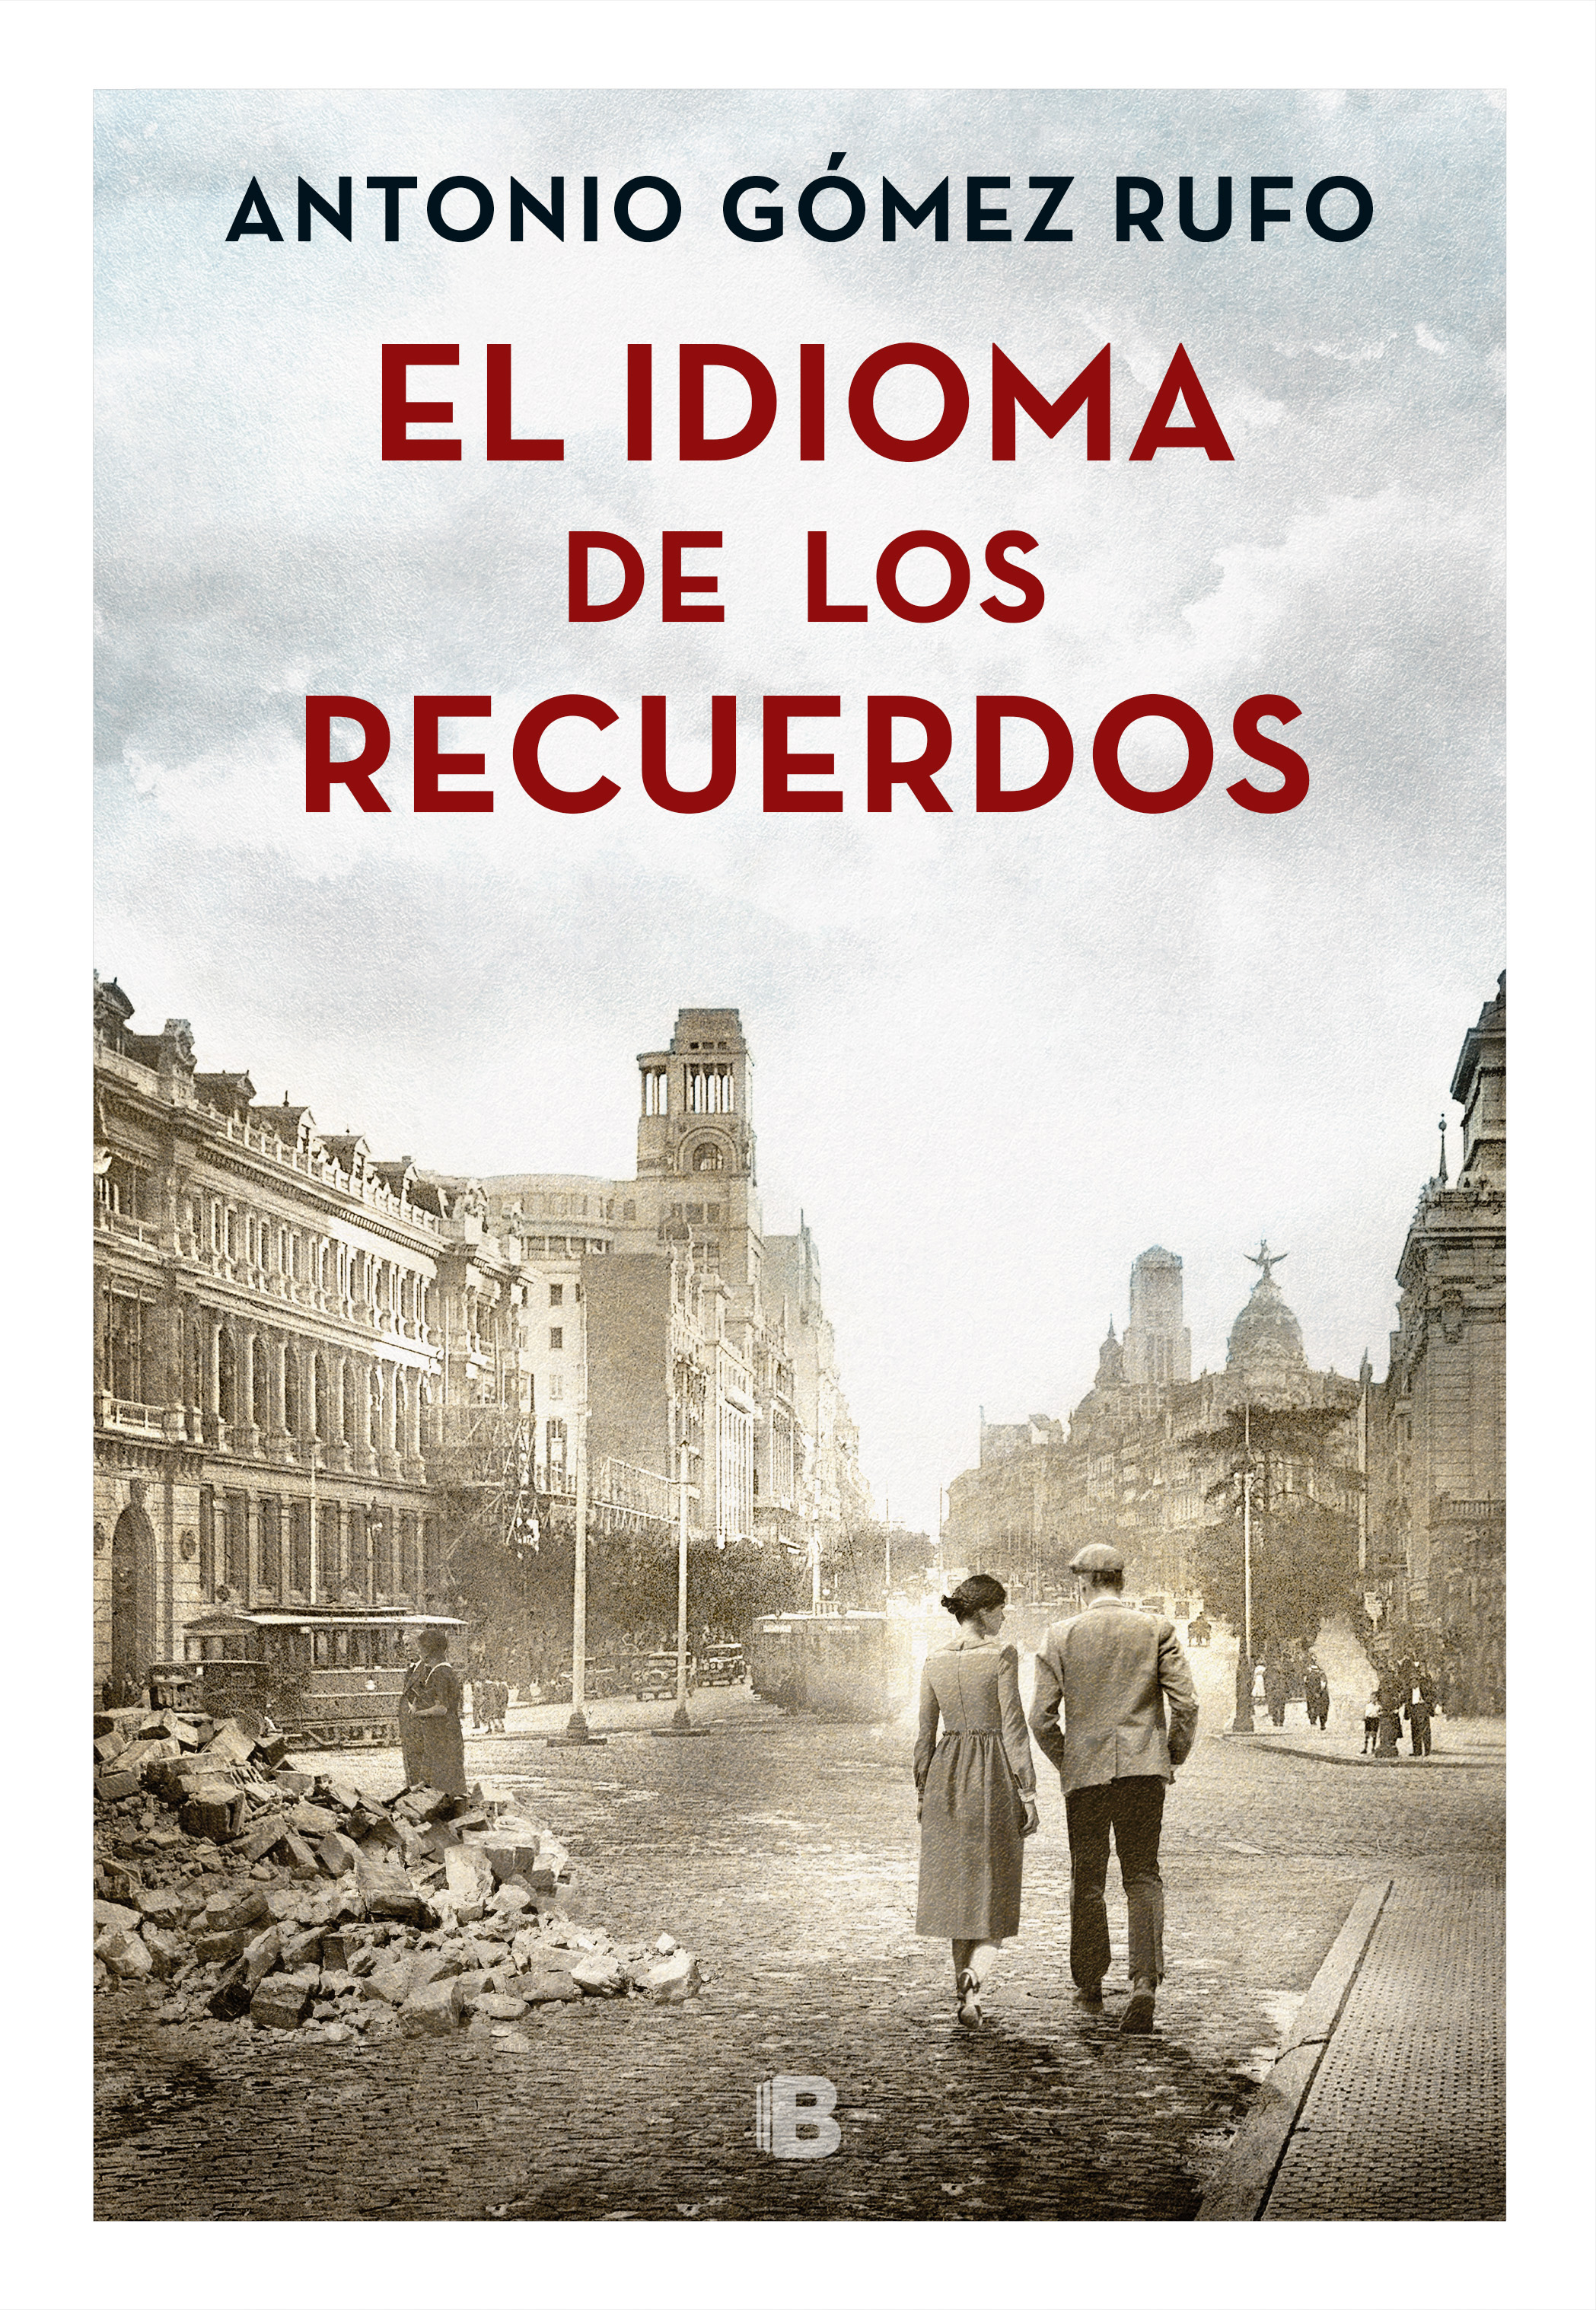 Antonio Gómez Rufo – Autor de la novela "El Idioma de recuerdos"